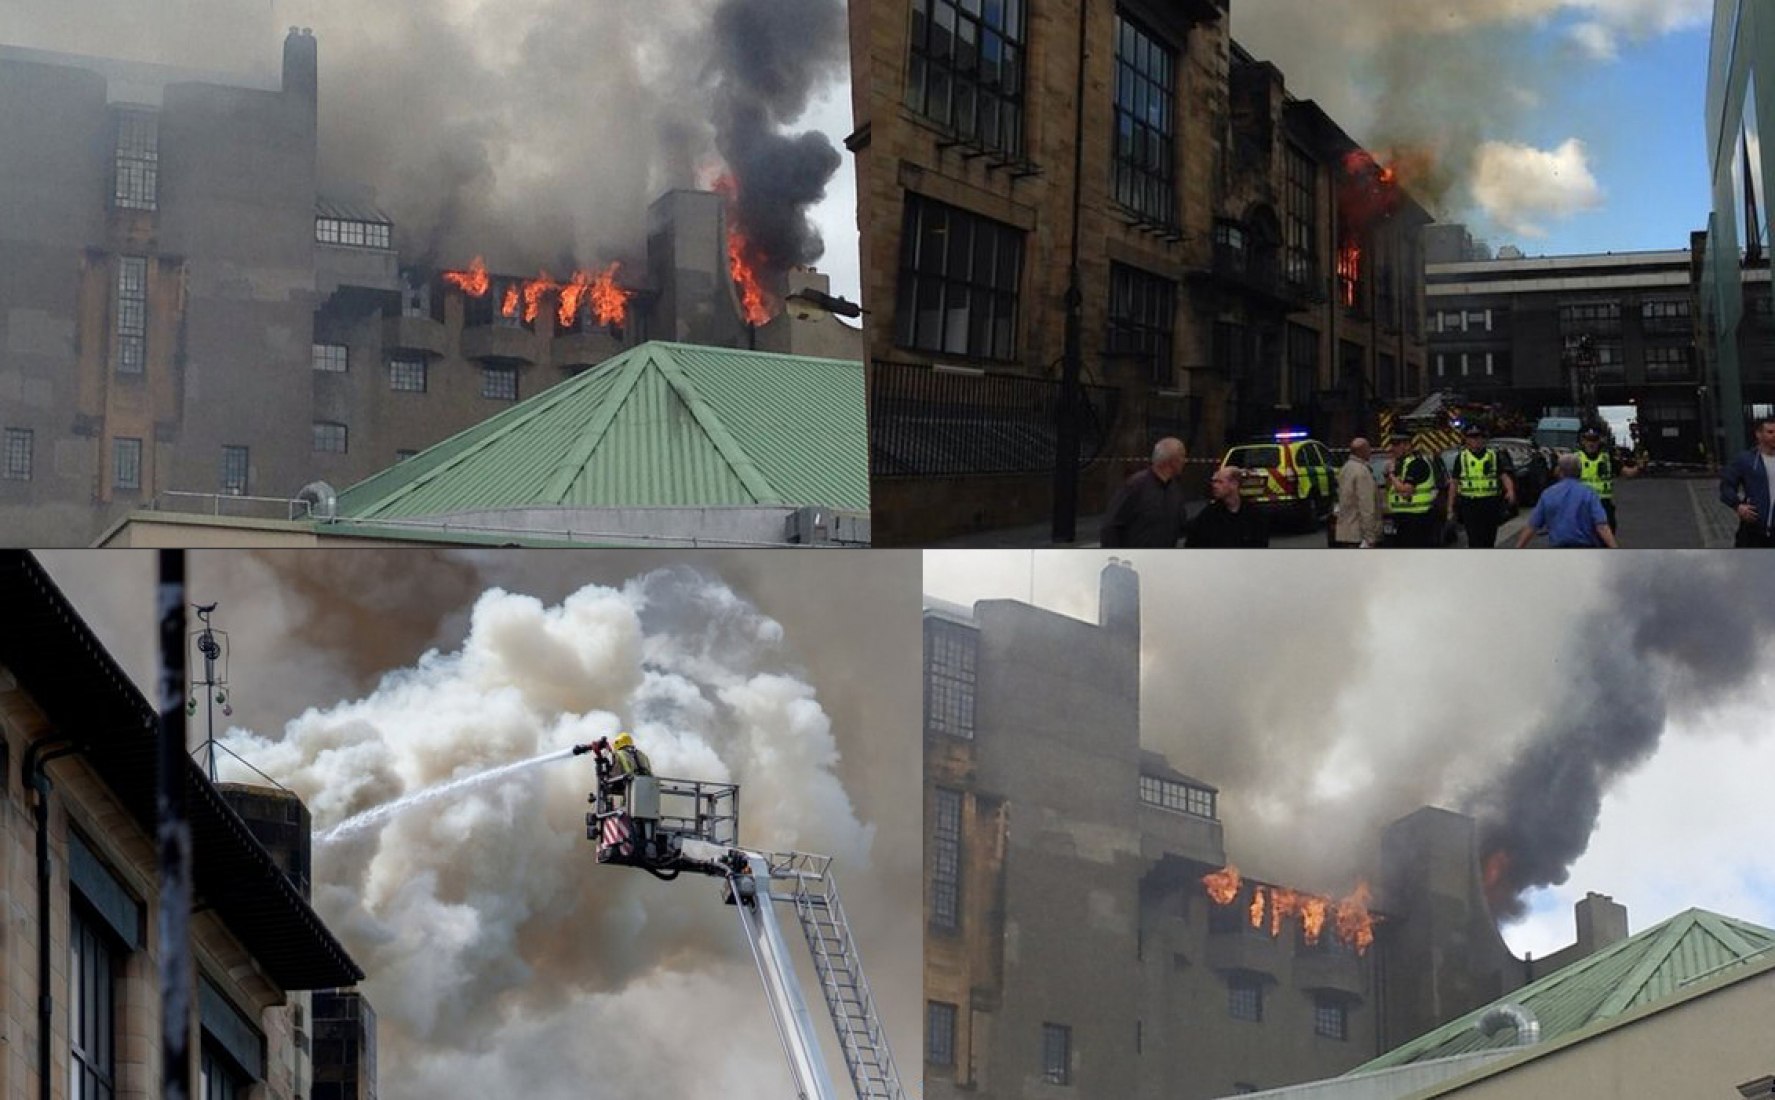 Vistas ardiendo. Escuela de Arte de Mackintosh en Glasgow. 